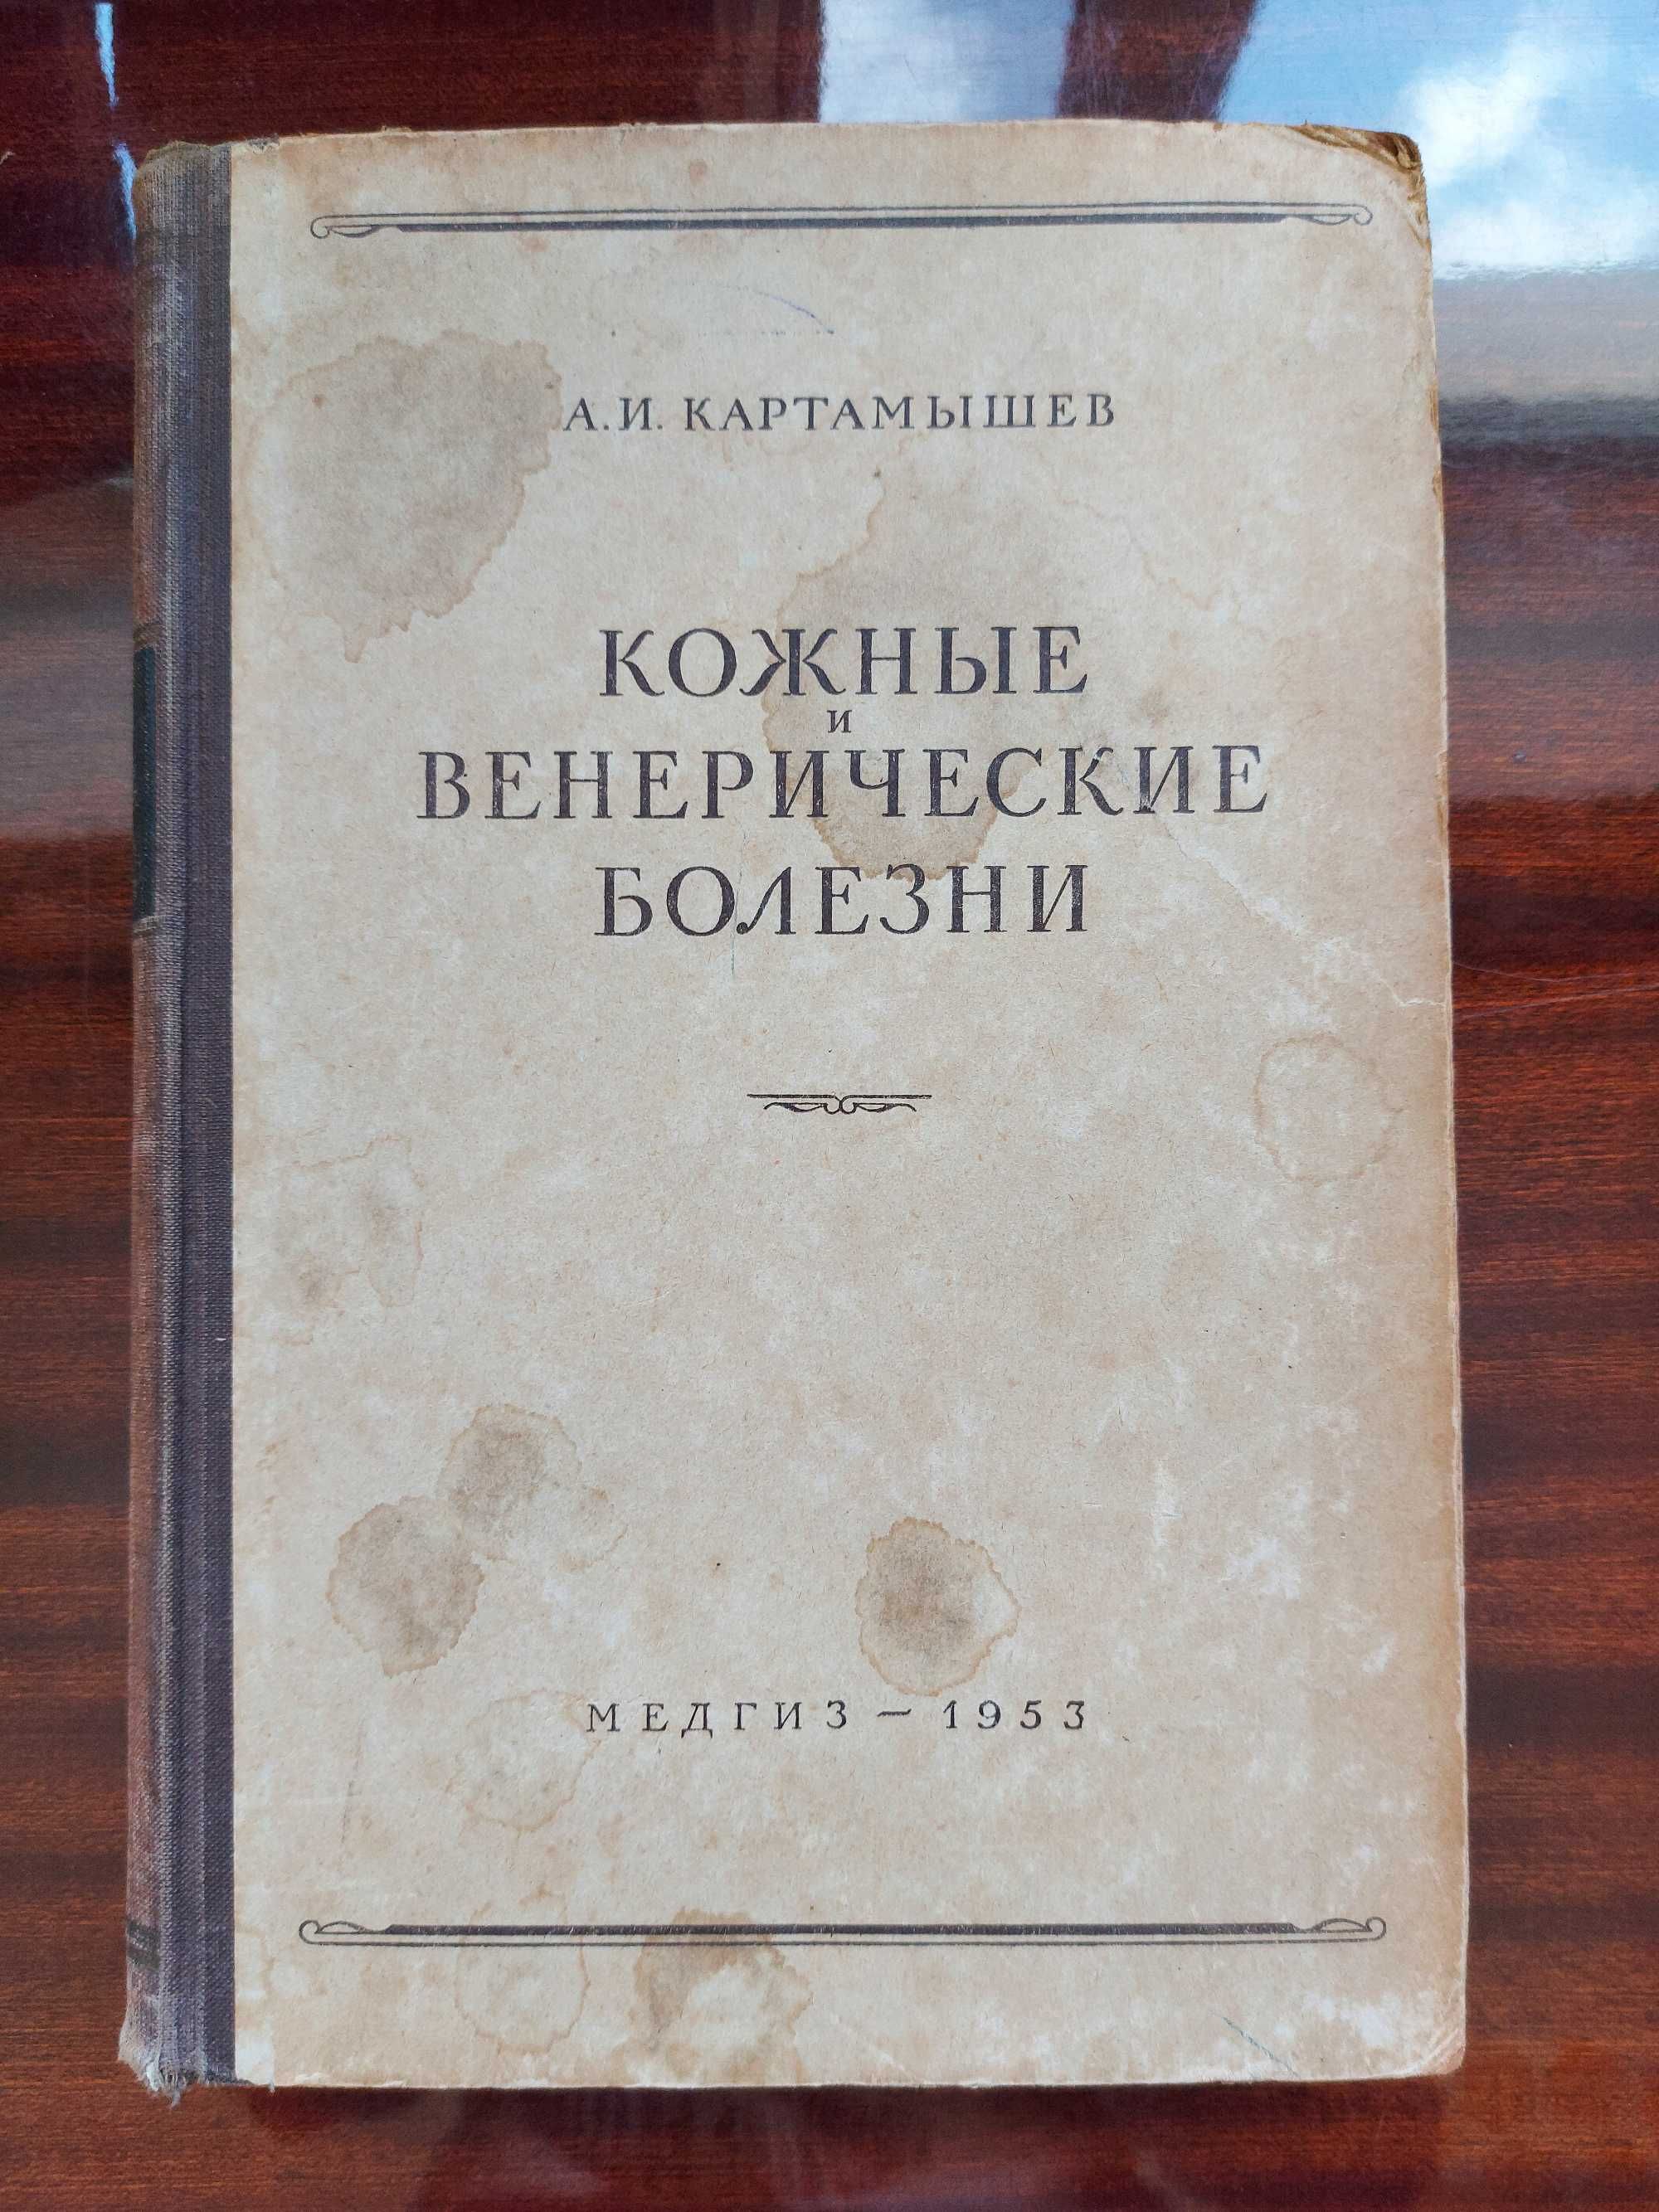 Кожные и венерические болезни. Картамышев А.И.1953г.